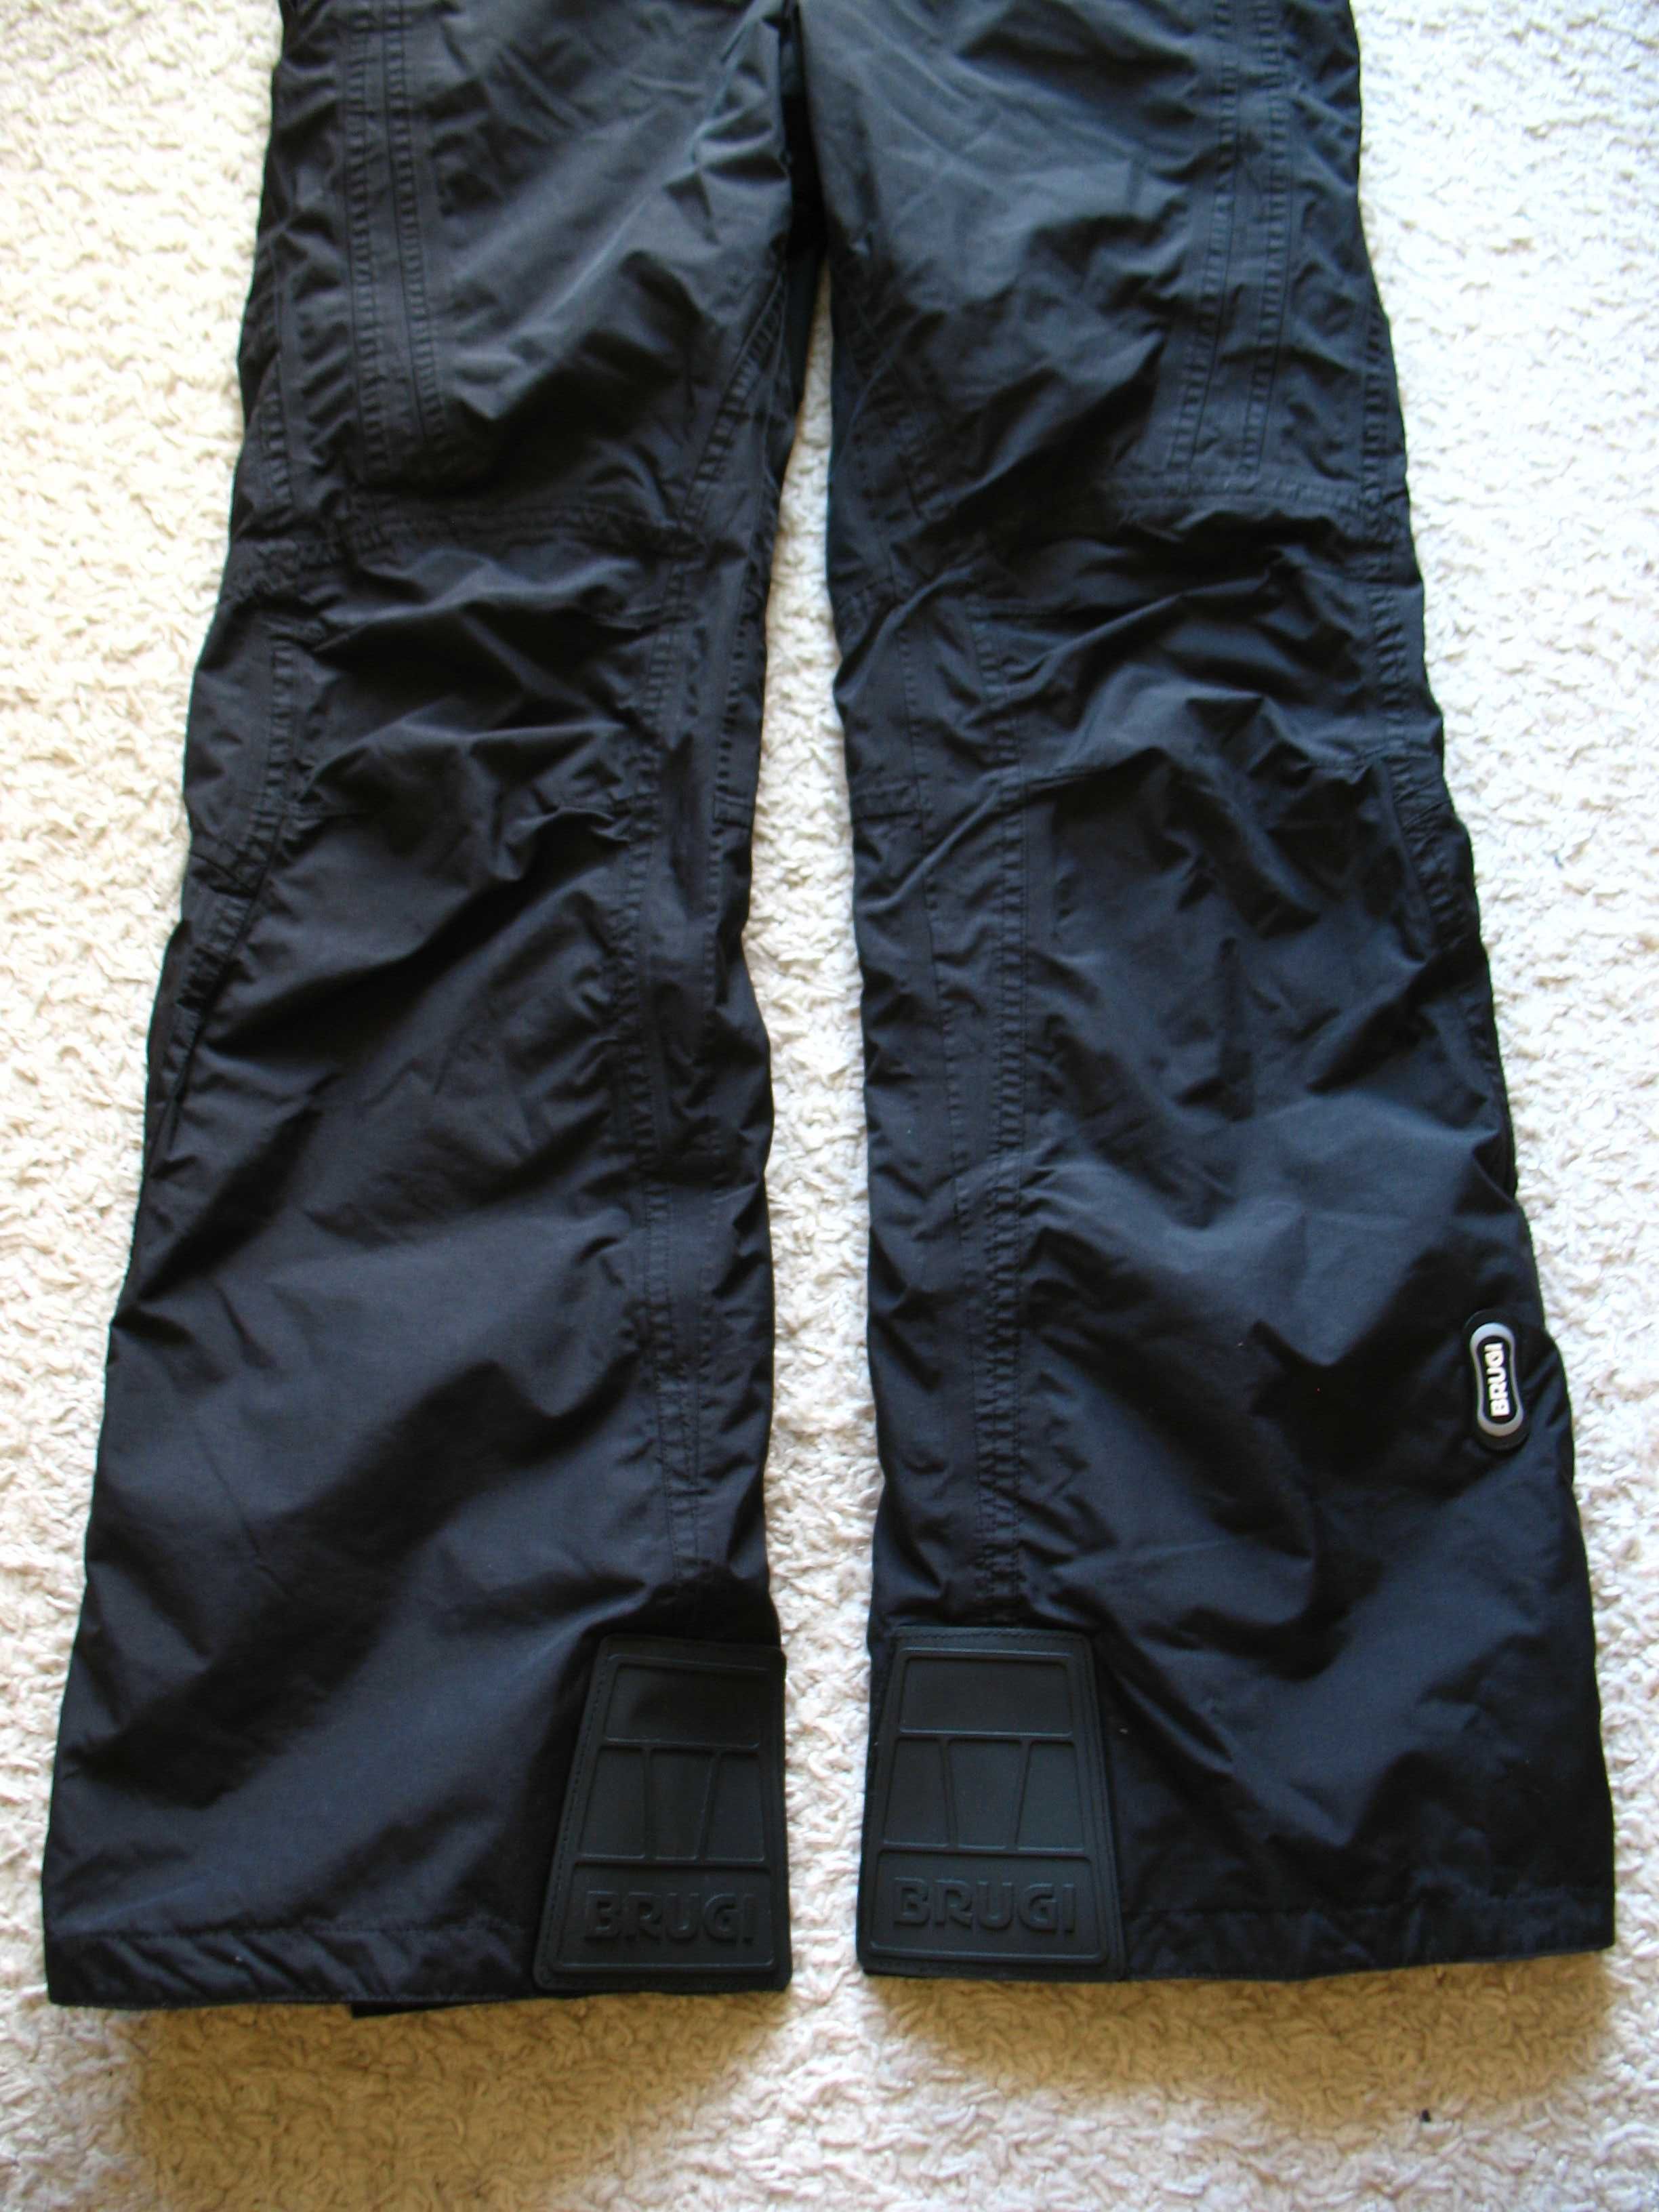 Spodnie zimowe Brugi 3000 by Tex, narty, snowboard. Rozmiar 164 cm